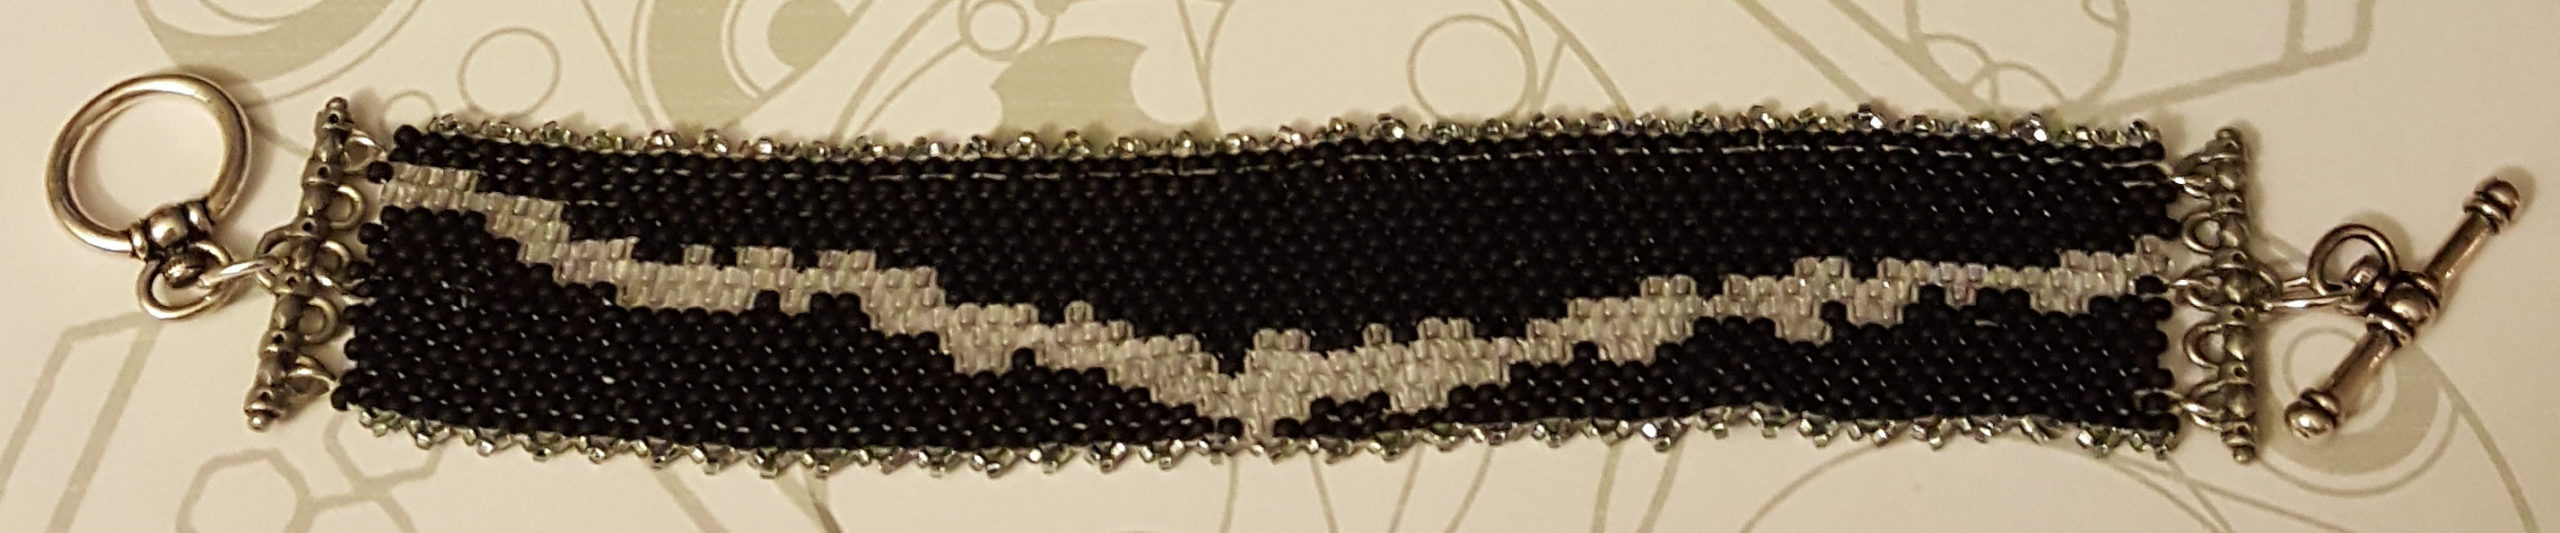 More Bracelet Patterns up